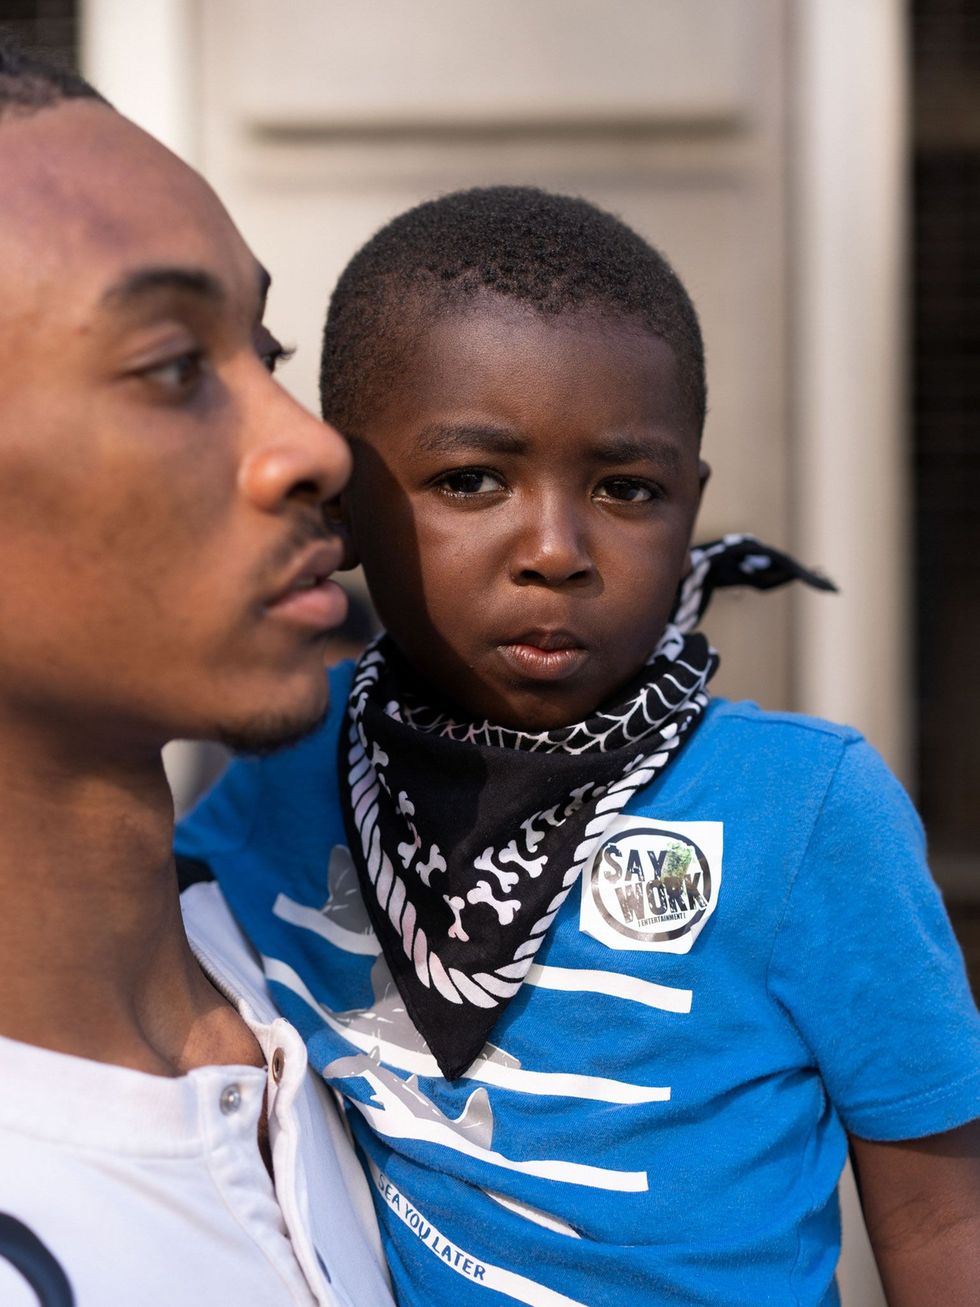 Deangelo Garvin 23 uit Washington DC heeft zijn zoon DJ 4 op de arm terwijl hij in de buurt staat van de plek waar de demonstraties in volle gang zijn Ik ben hier gekomen omdat ik een trotse zwarte man ben zei Deangelo